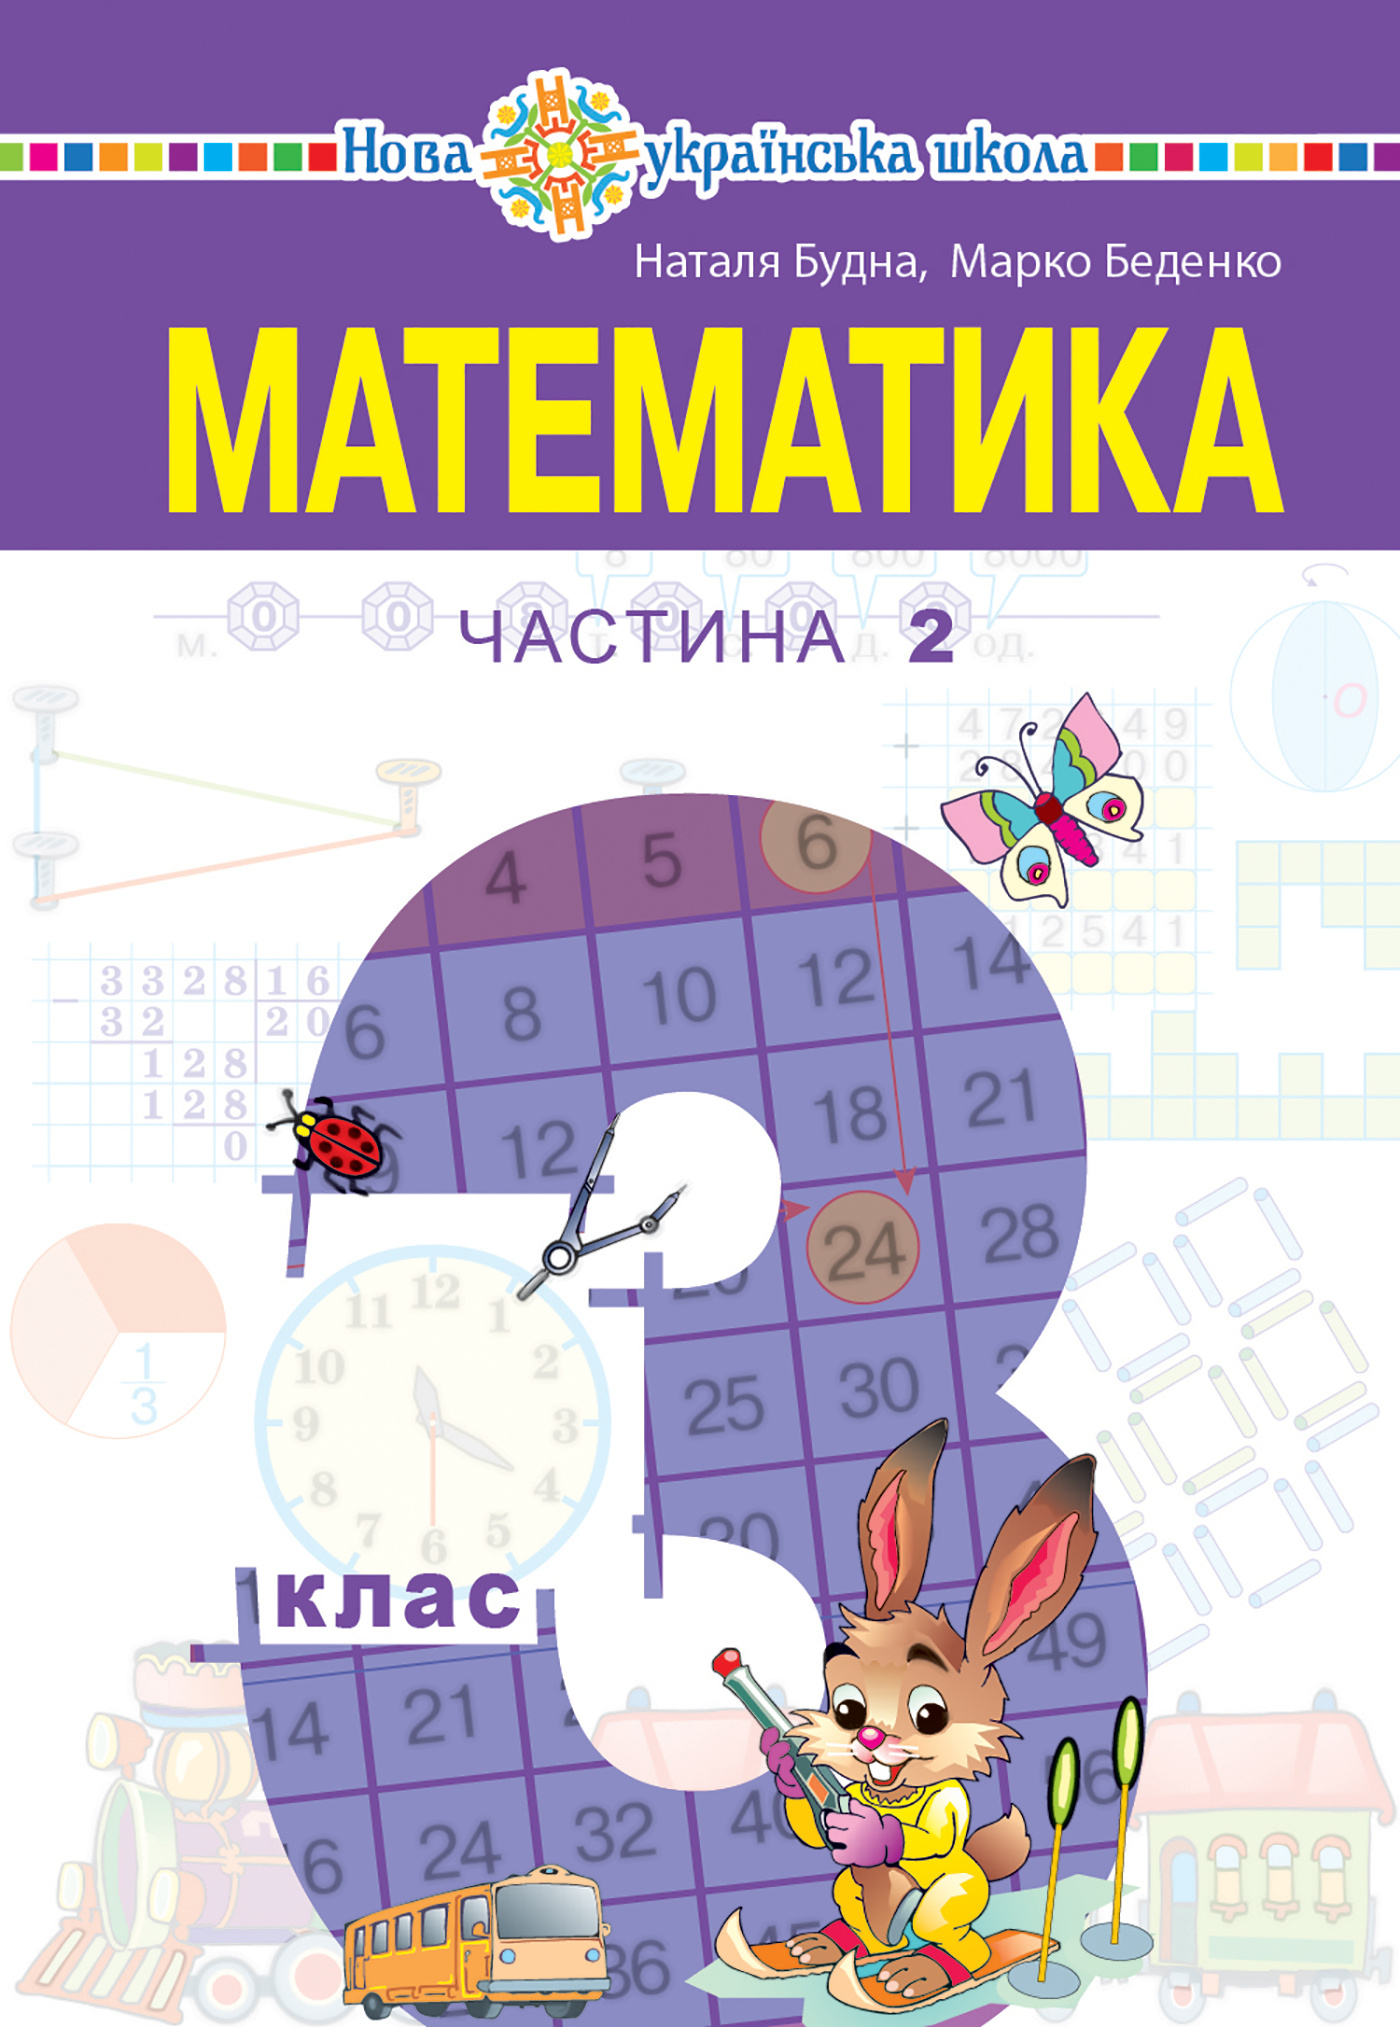 "Математика" підручник для 3 класу закладів загальної середньої освіти (у 2-х частинах). Частина 2  (2020 год). Автор — Наталія Будна. 